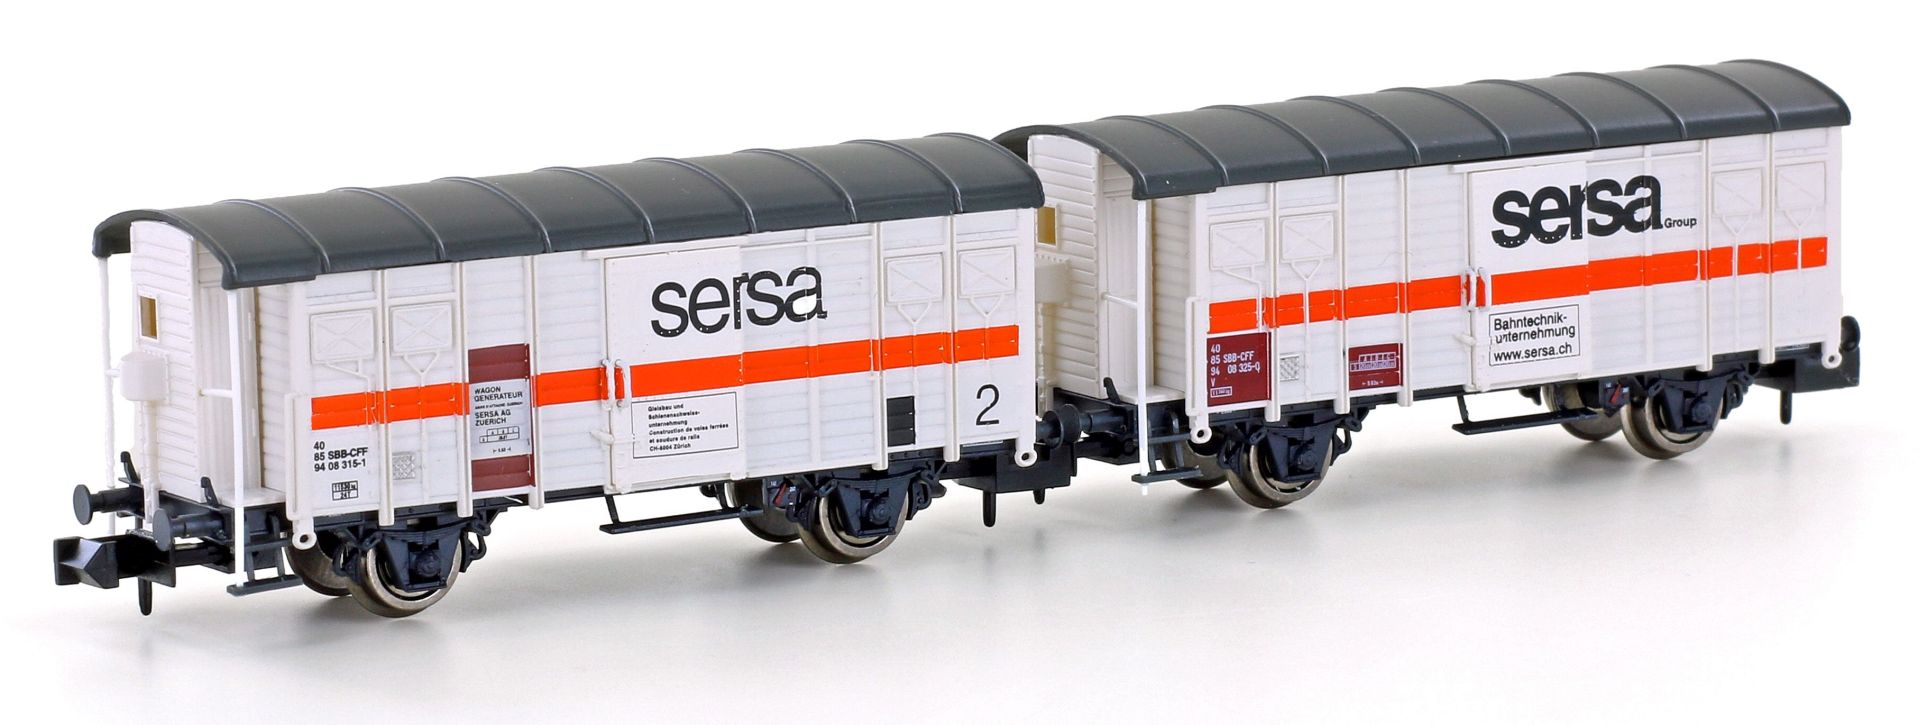 Hobbytrain H24253 - 2er Set gedeckte Güterwagen, SERSA, Ep.V